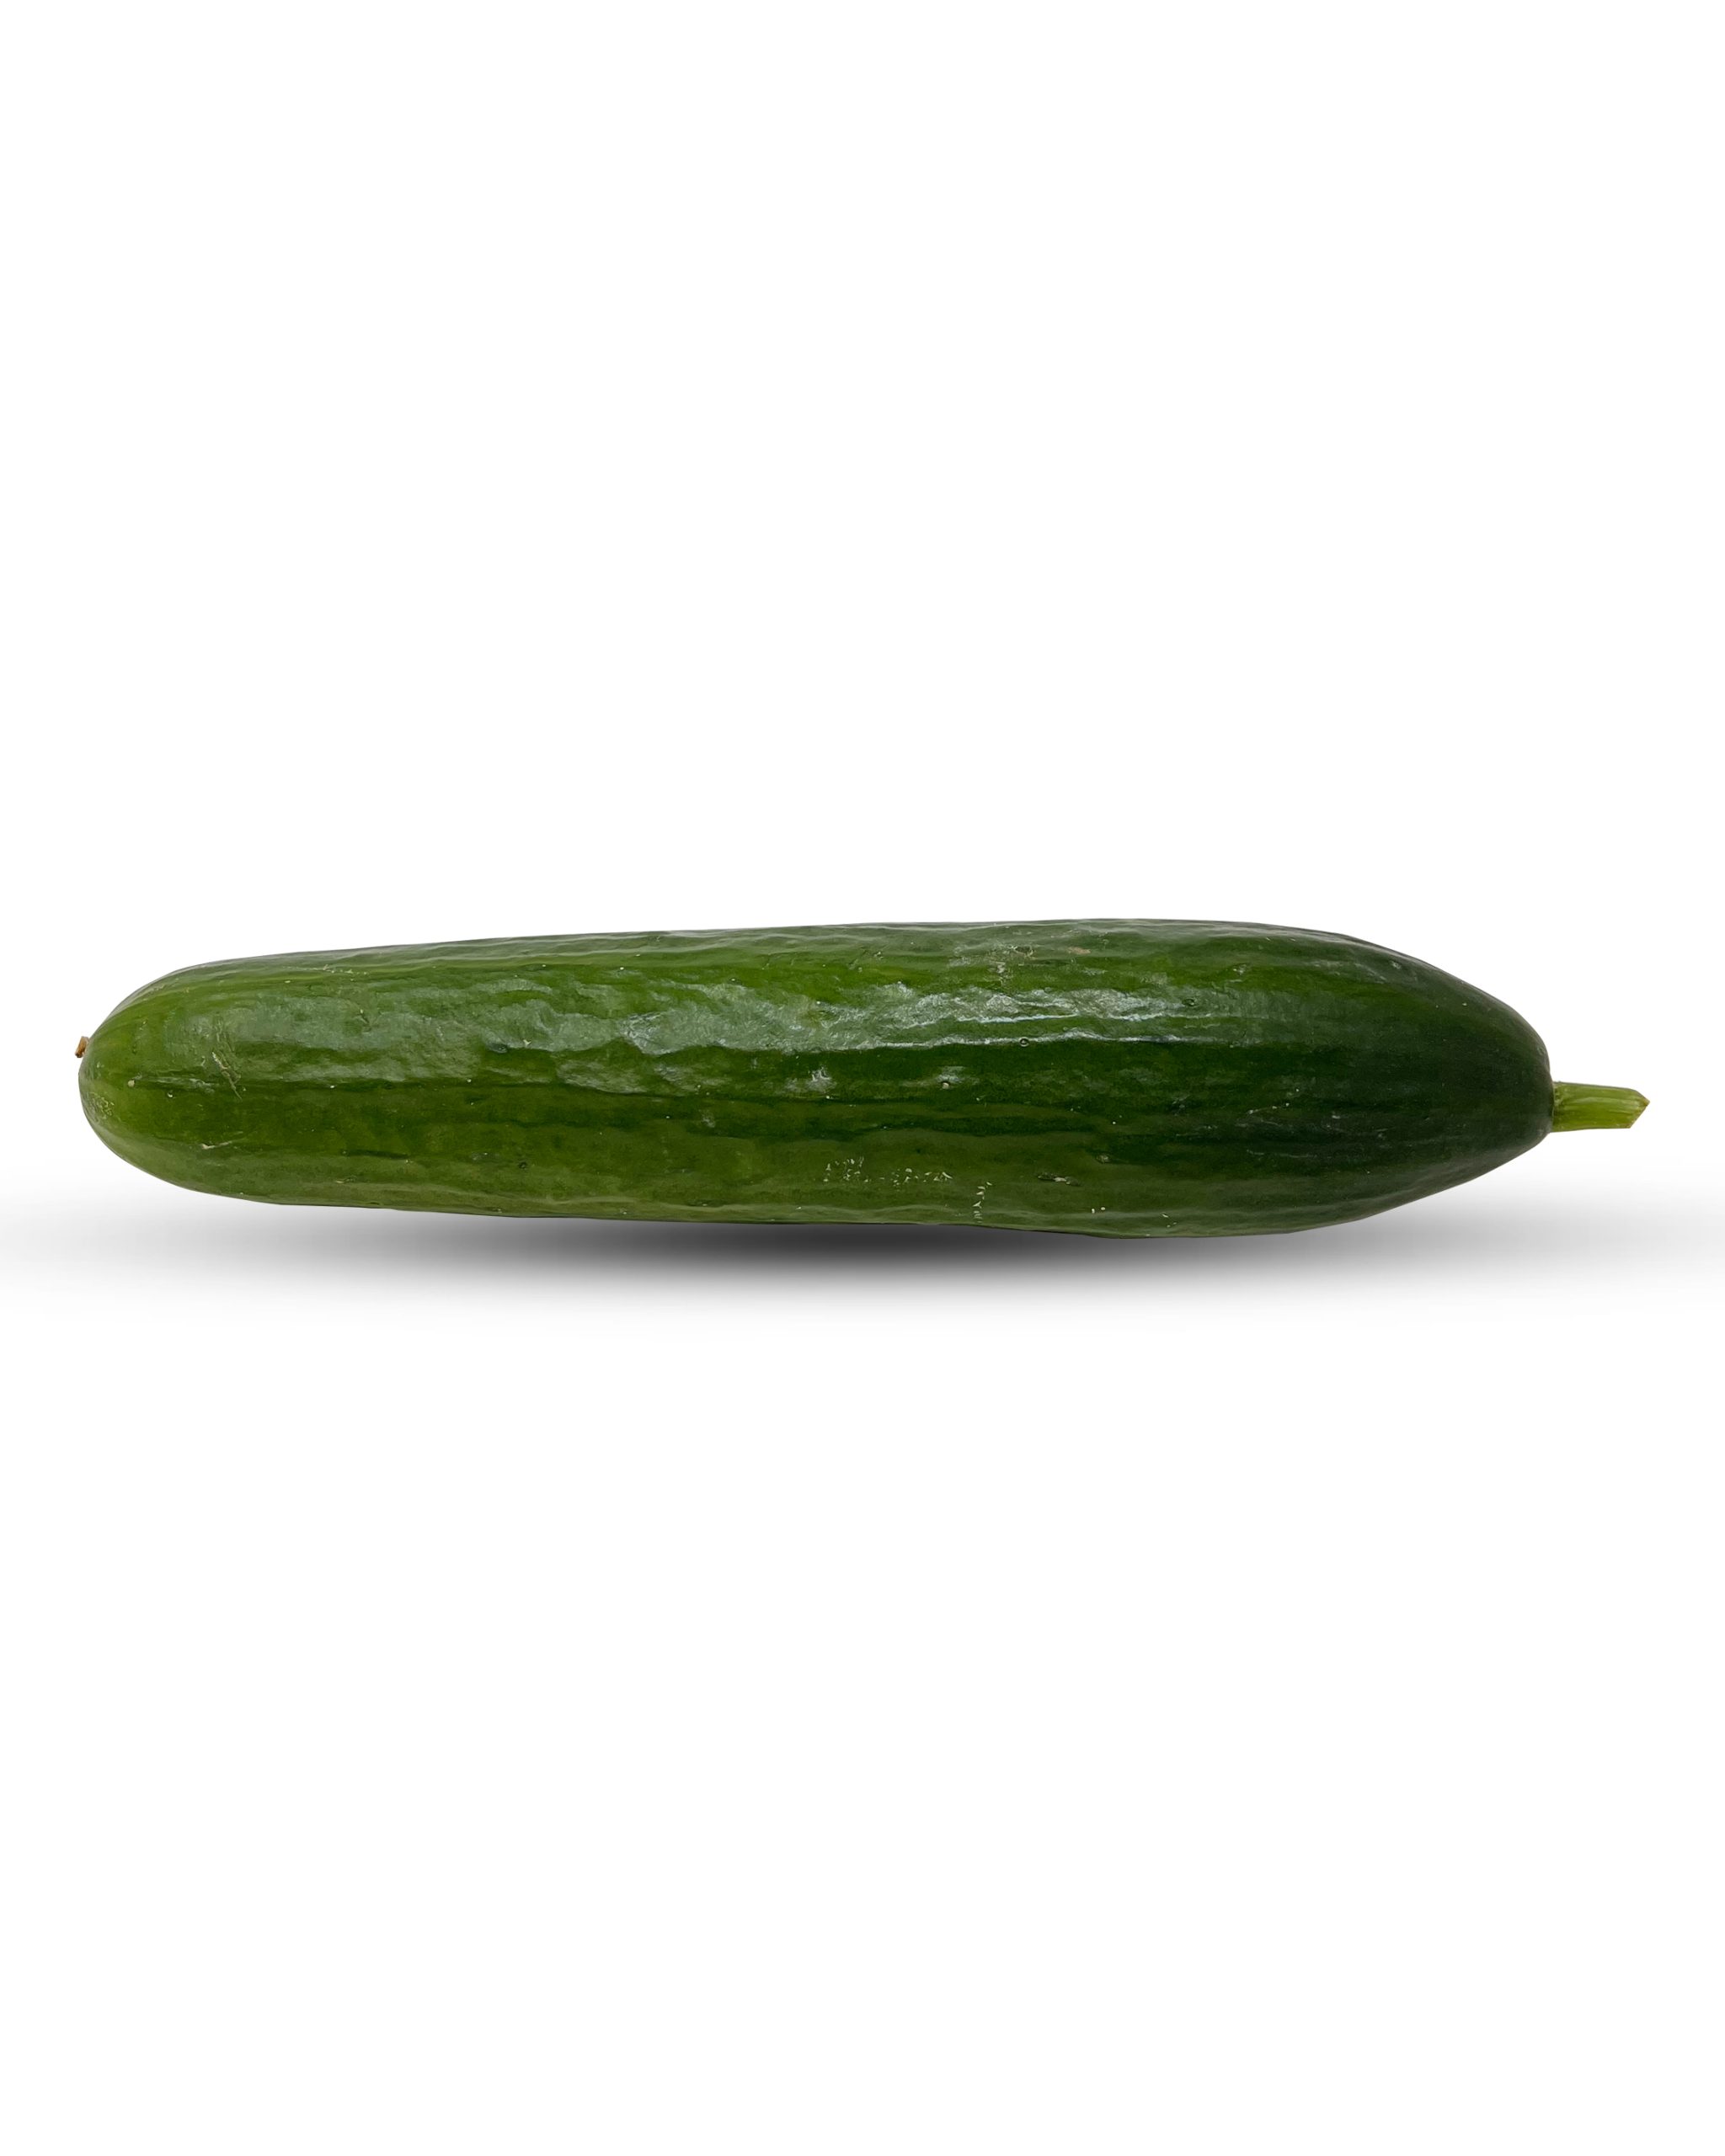 Field Cucumbers